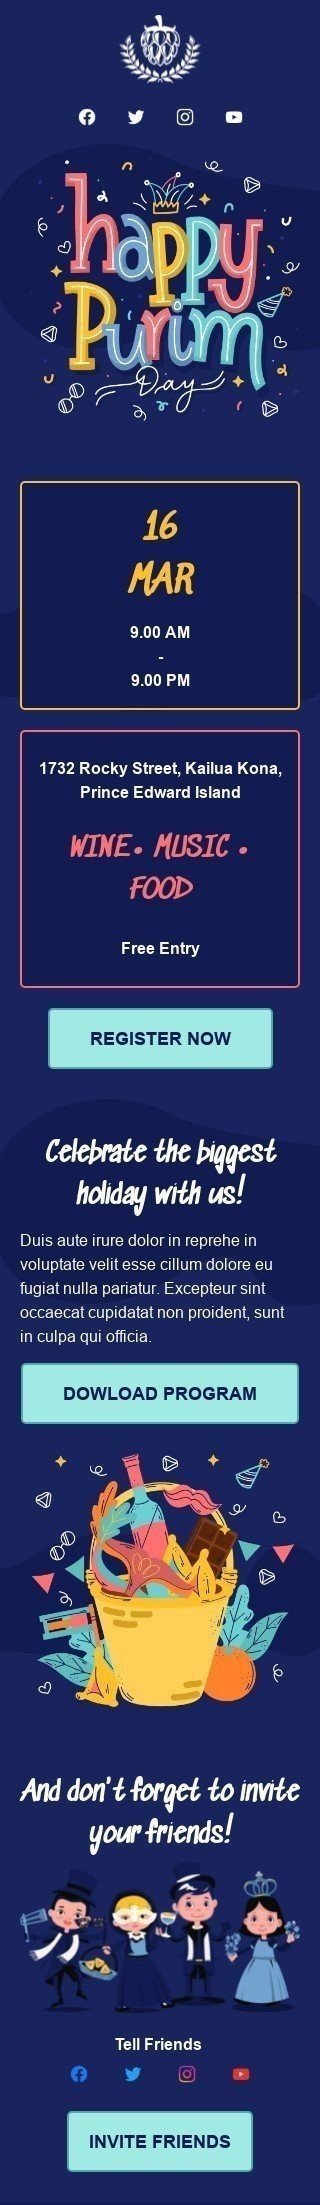 Plantilla de correo electrónico «Feliz Purim» de Purim para la industria de Hobbies Vista de móvil